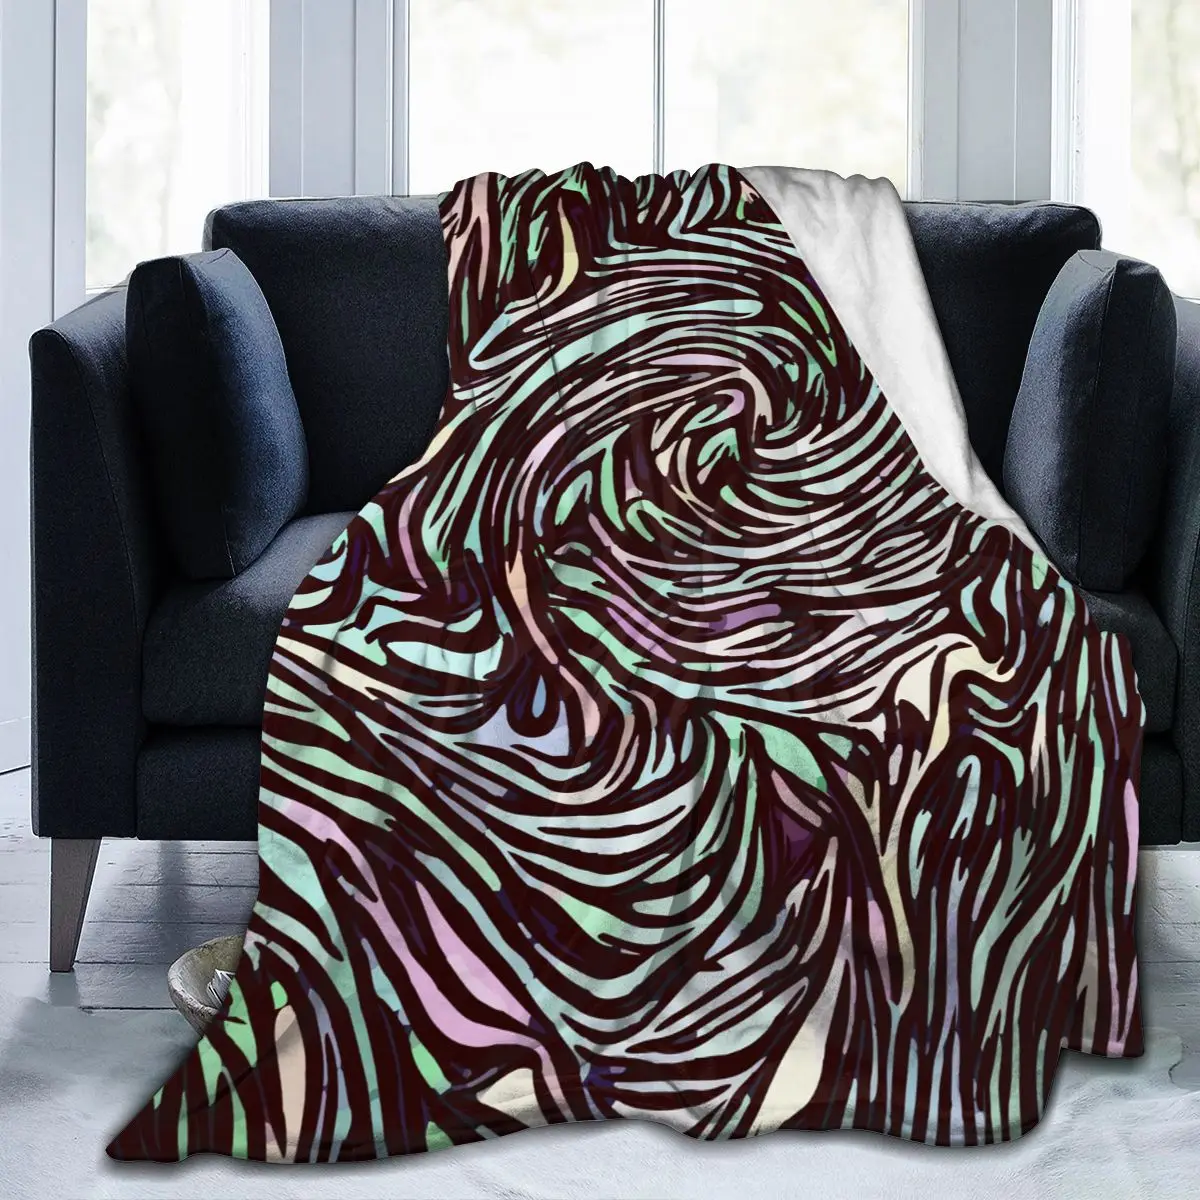 

Мягкое теплое фланелевое одеяло, дорожное портативное зимнее одеяло с абстрактным витражом, тонкое покрывало для кровати и дивана